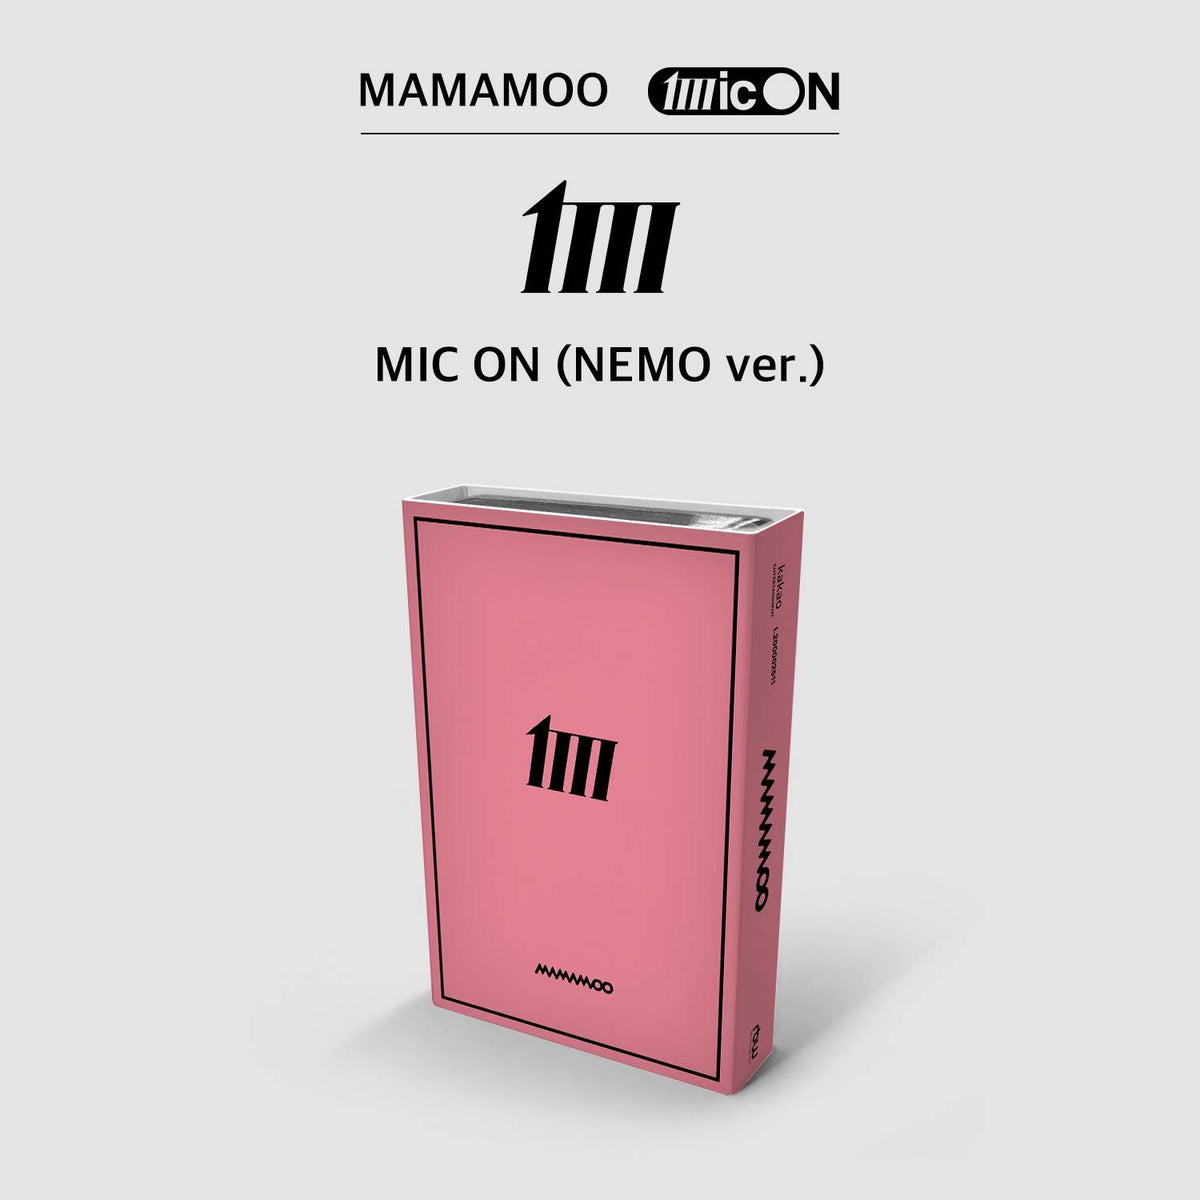 MAMAMOO - 12th Mini Album [MIC ON] (NEMO ver. / Limited Edition)